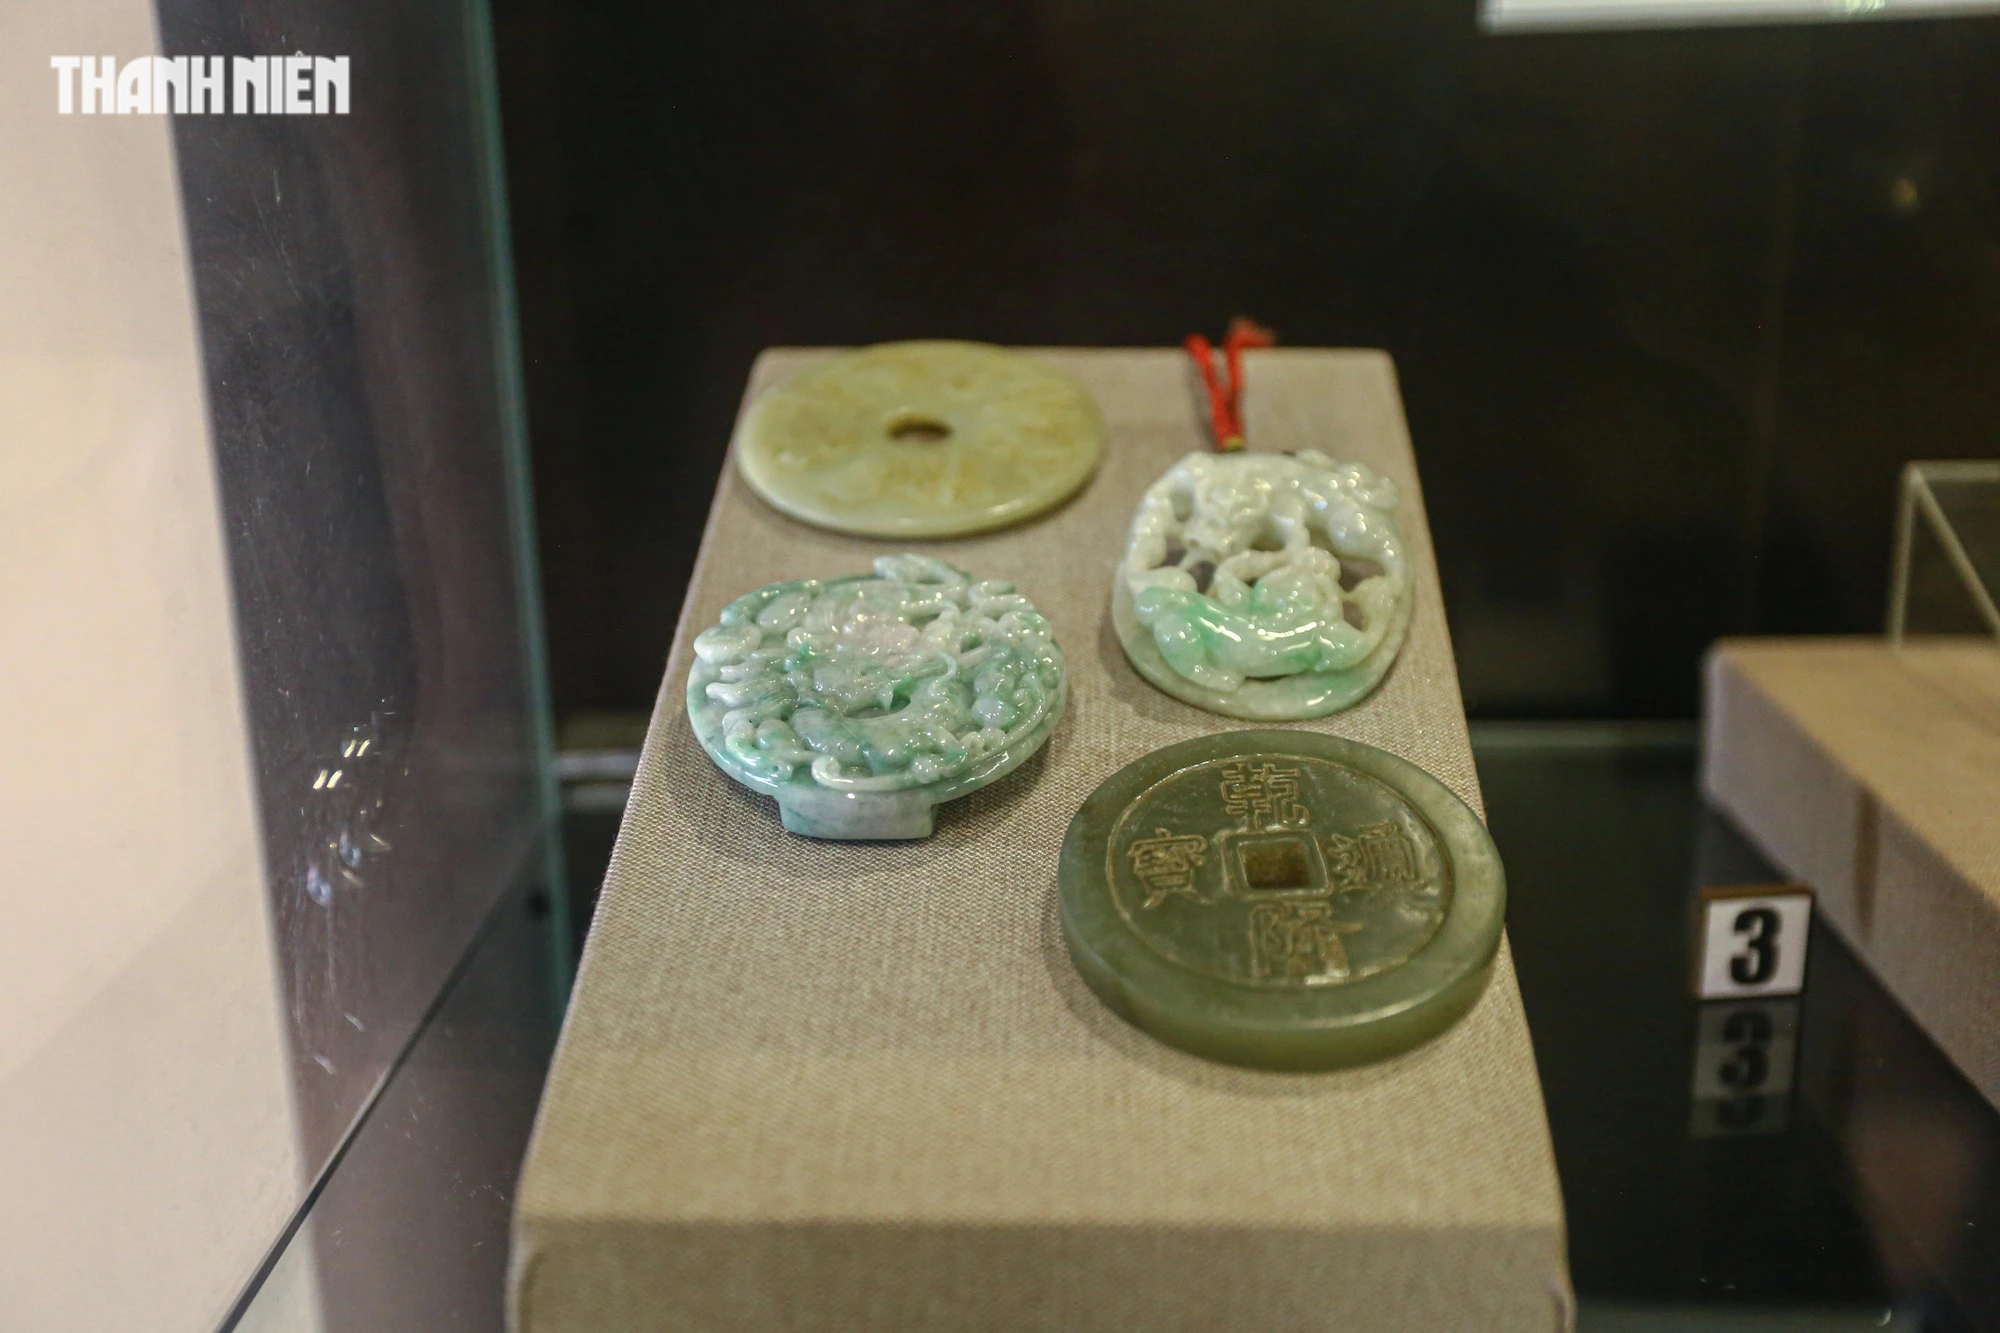 Chiêm ngưỡng hơn 70 món ngọc quý thời Nguyễn đang được trưng bày tại Huế - Ảnh 7.